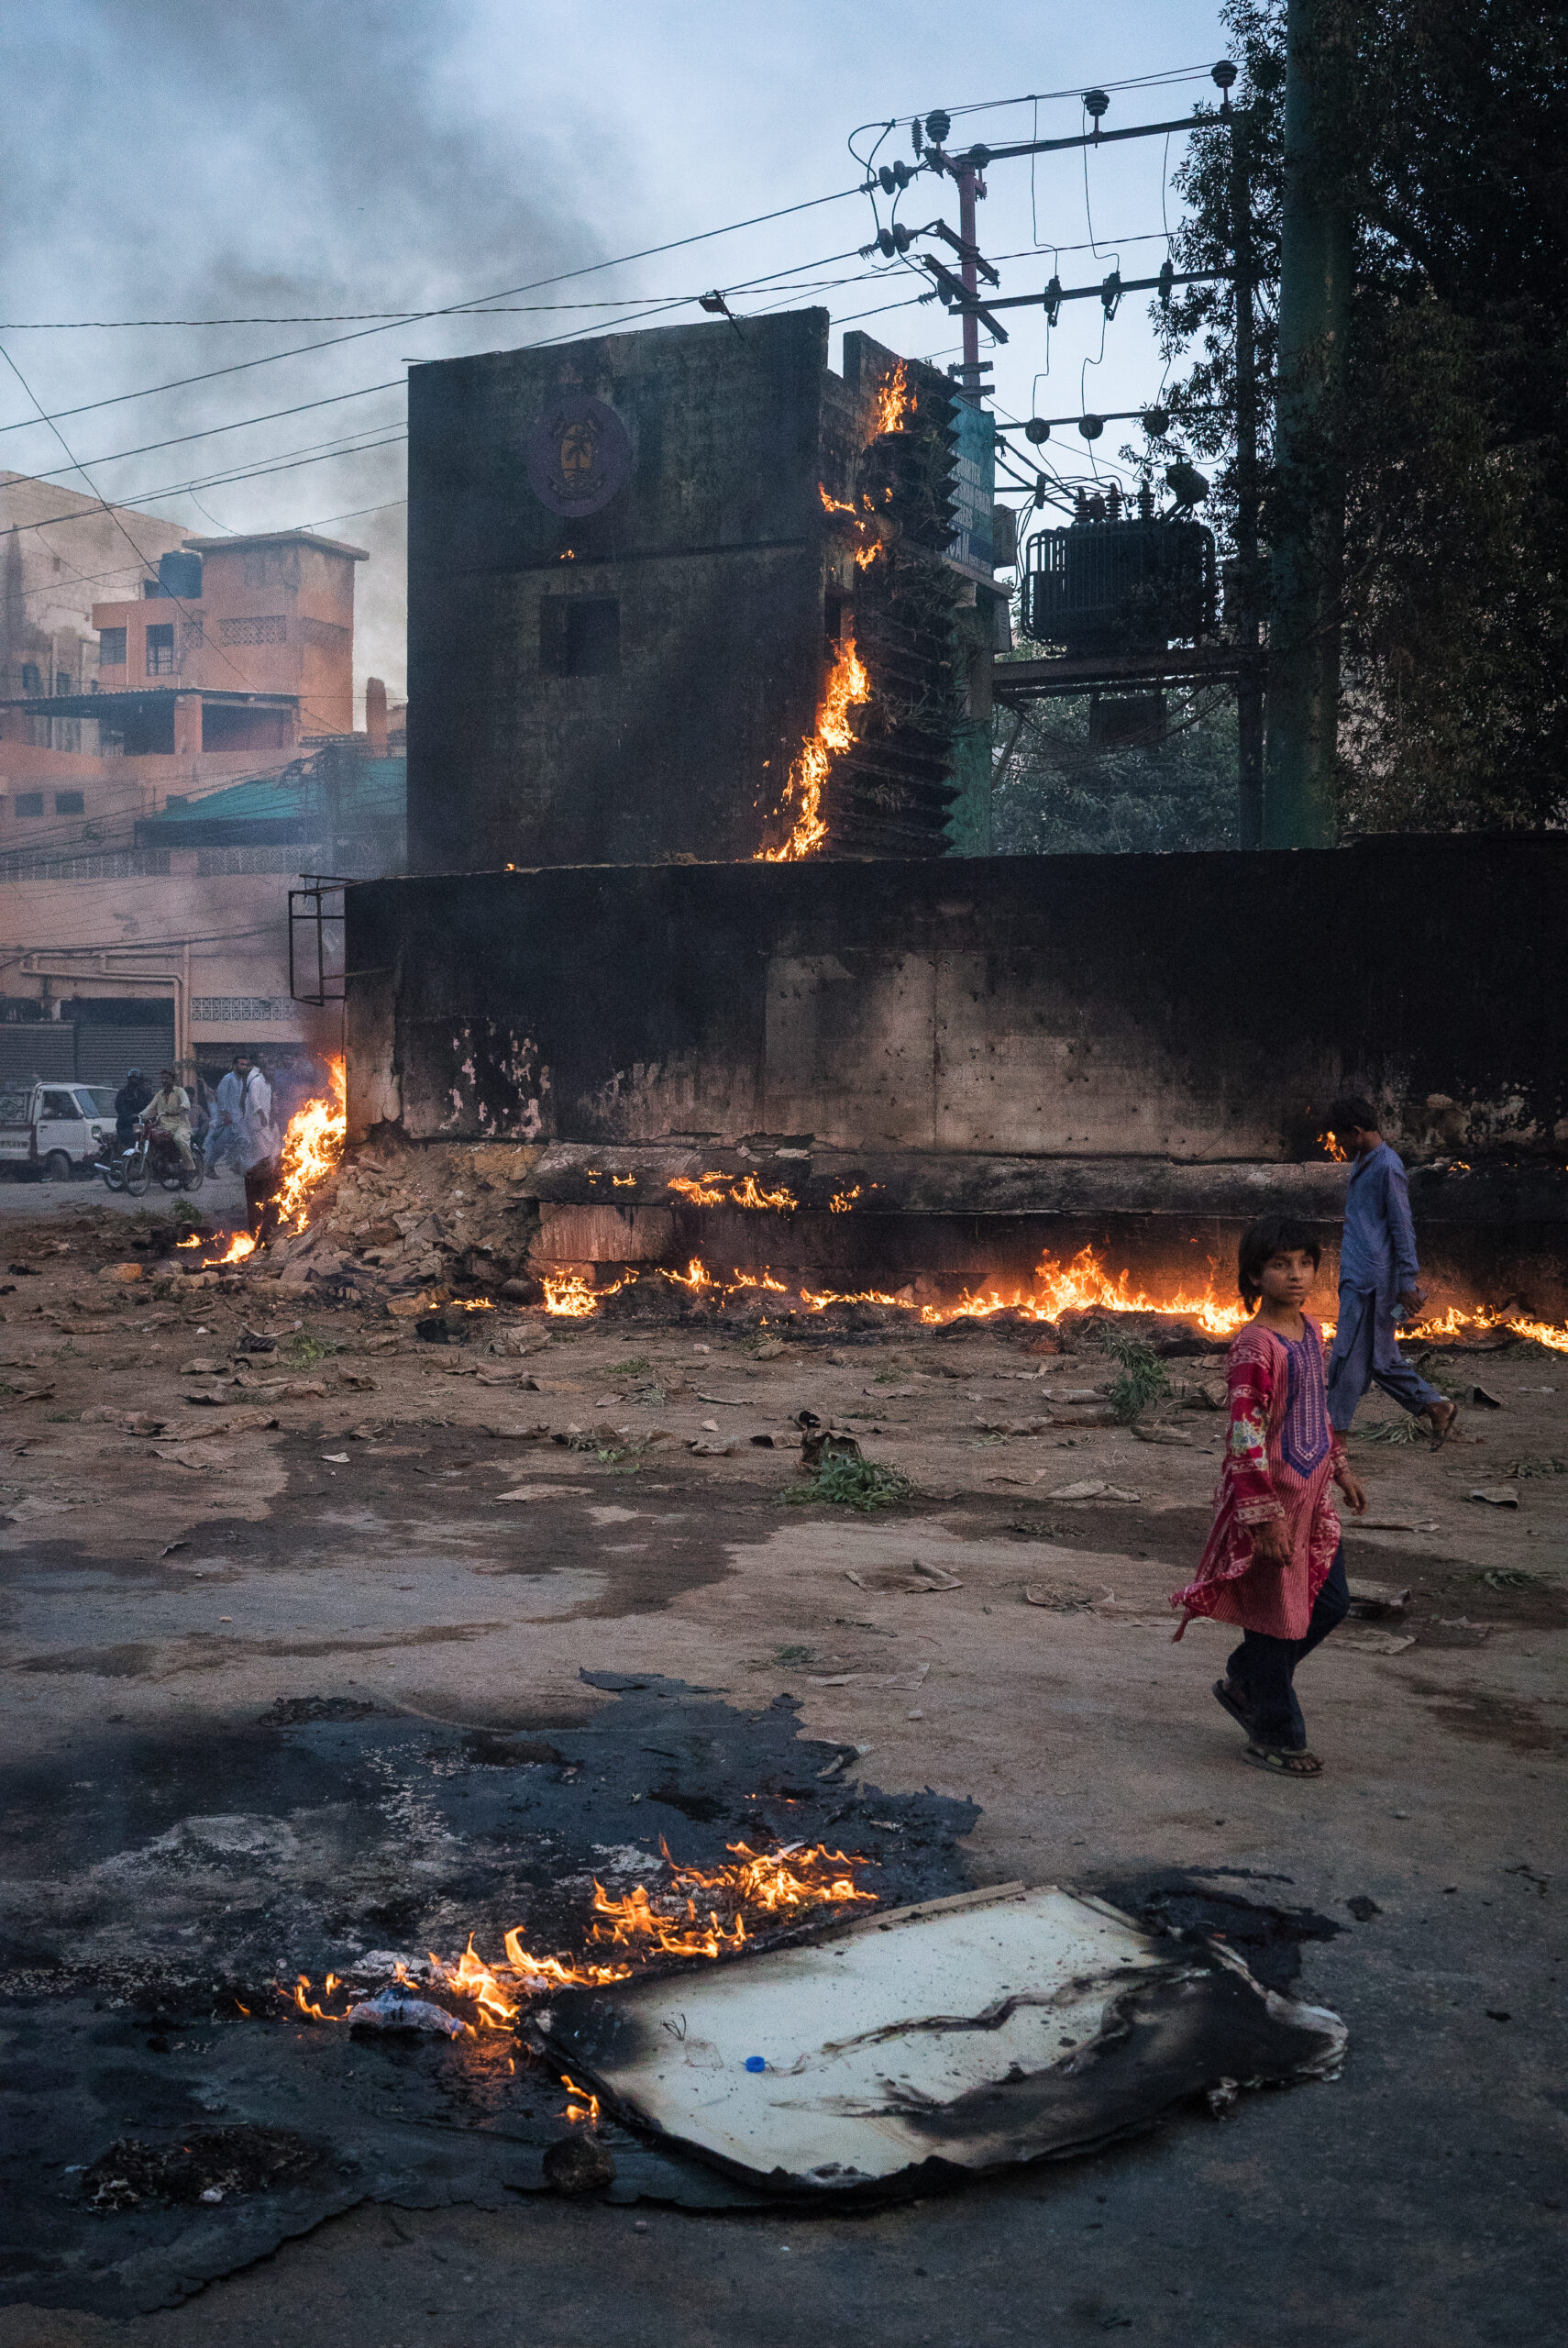 Partidarios del PTI prenden fuego al chowki de los Rangers de Sindh, Karachi, 9 de mayo. © Laurent Gayer